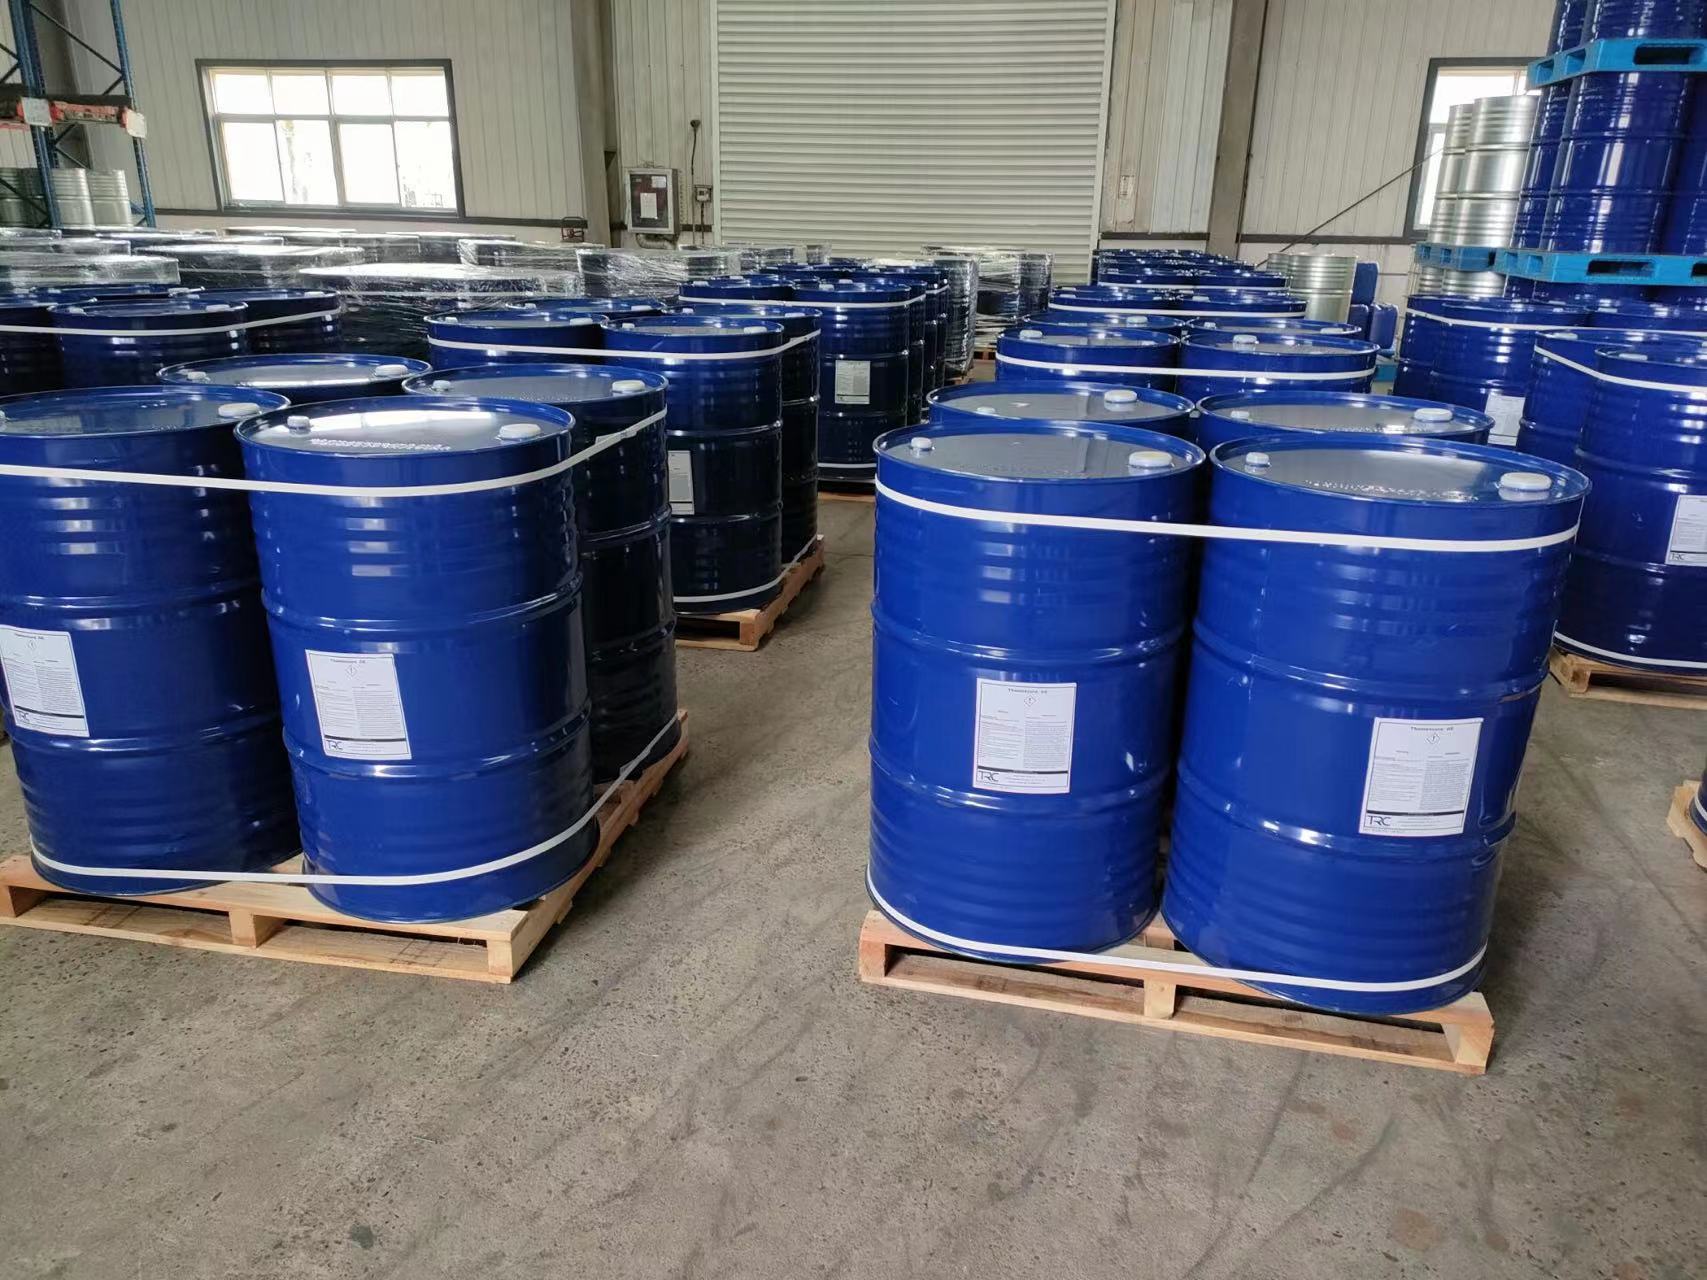 C12-C14 alkilglicidilētera grīdas pārklājums AGE Mit-Ivy ir labi pazīstams smalko ķīmisko vielu un farmaceitisko starpproduktu ražotājs ar spēcīgu pētniecības un attīstības atbalstu Ķīnā.Galvenokārt iesaistīti indola, tiofēna, pirimidīna, anilīna, hlora produkti.Maksājums: pieņemt visus maksājumus 008619961957599 info@mit-ivy.com http://www.mit-ivy.com